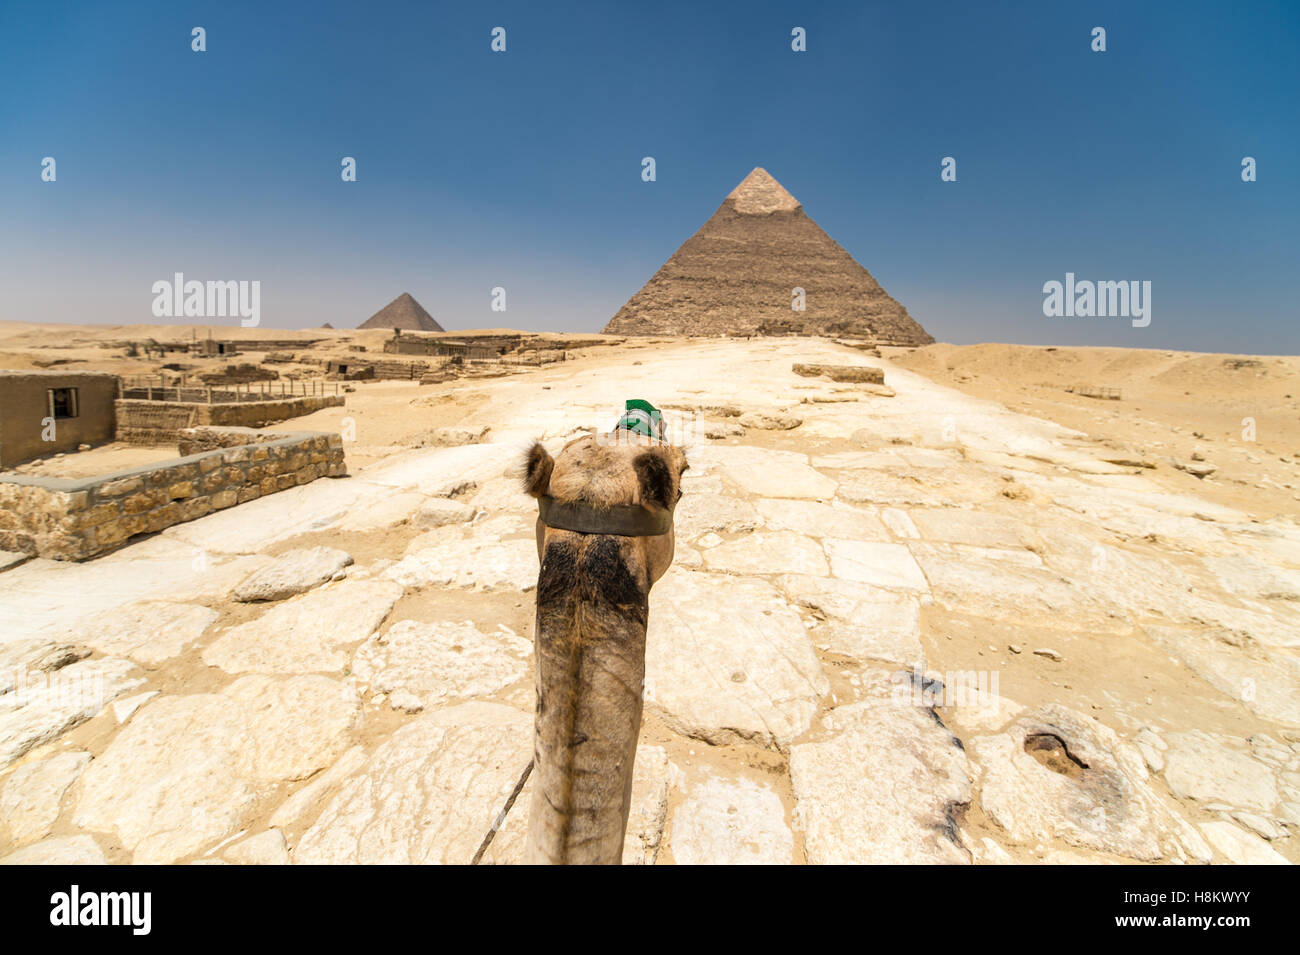 Le Caire, Égypte'monté sur un chameau à travers le désert avec les grandes pyramides de Gizeh à l'arrière-plan. Ces particuliers Banque D'Images